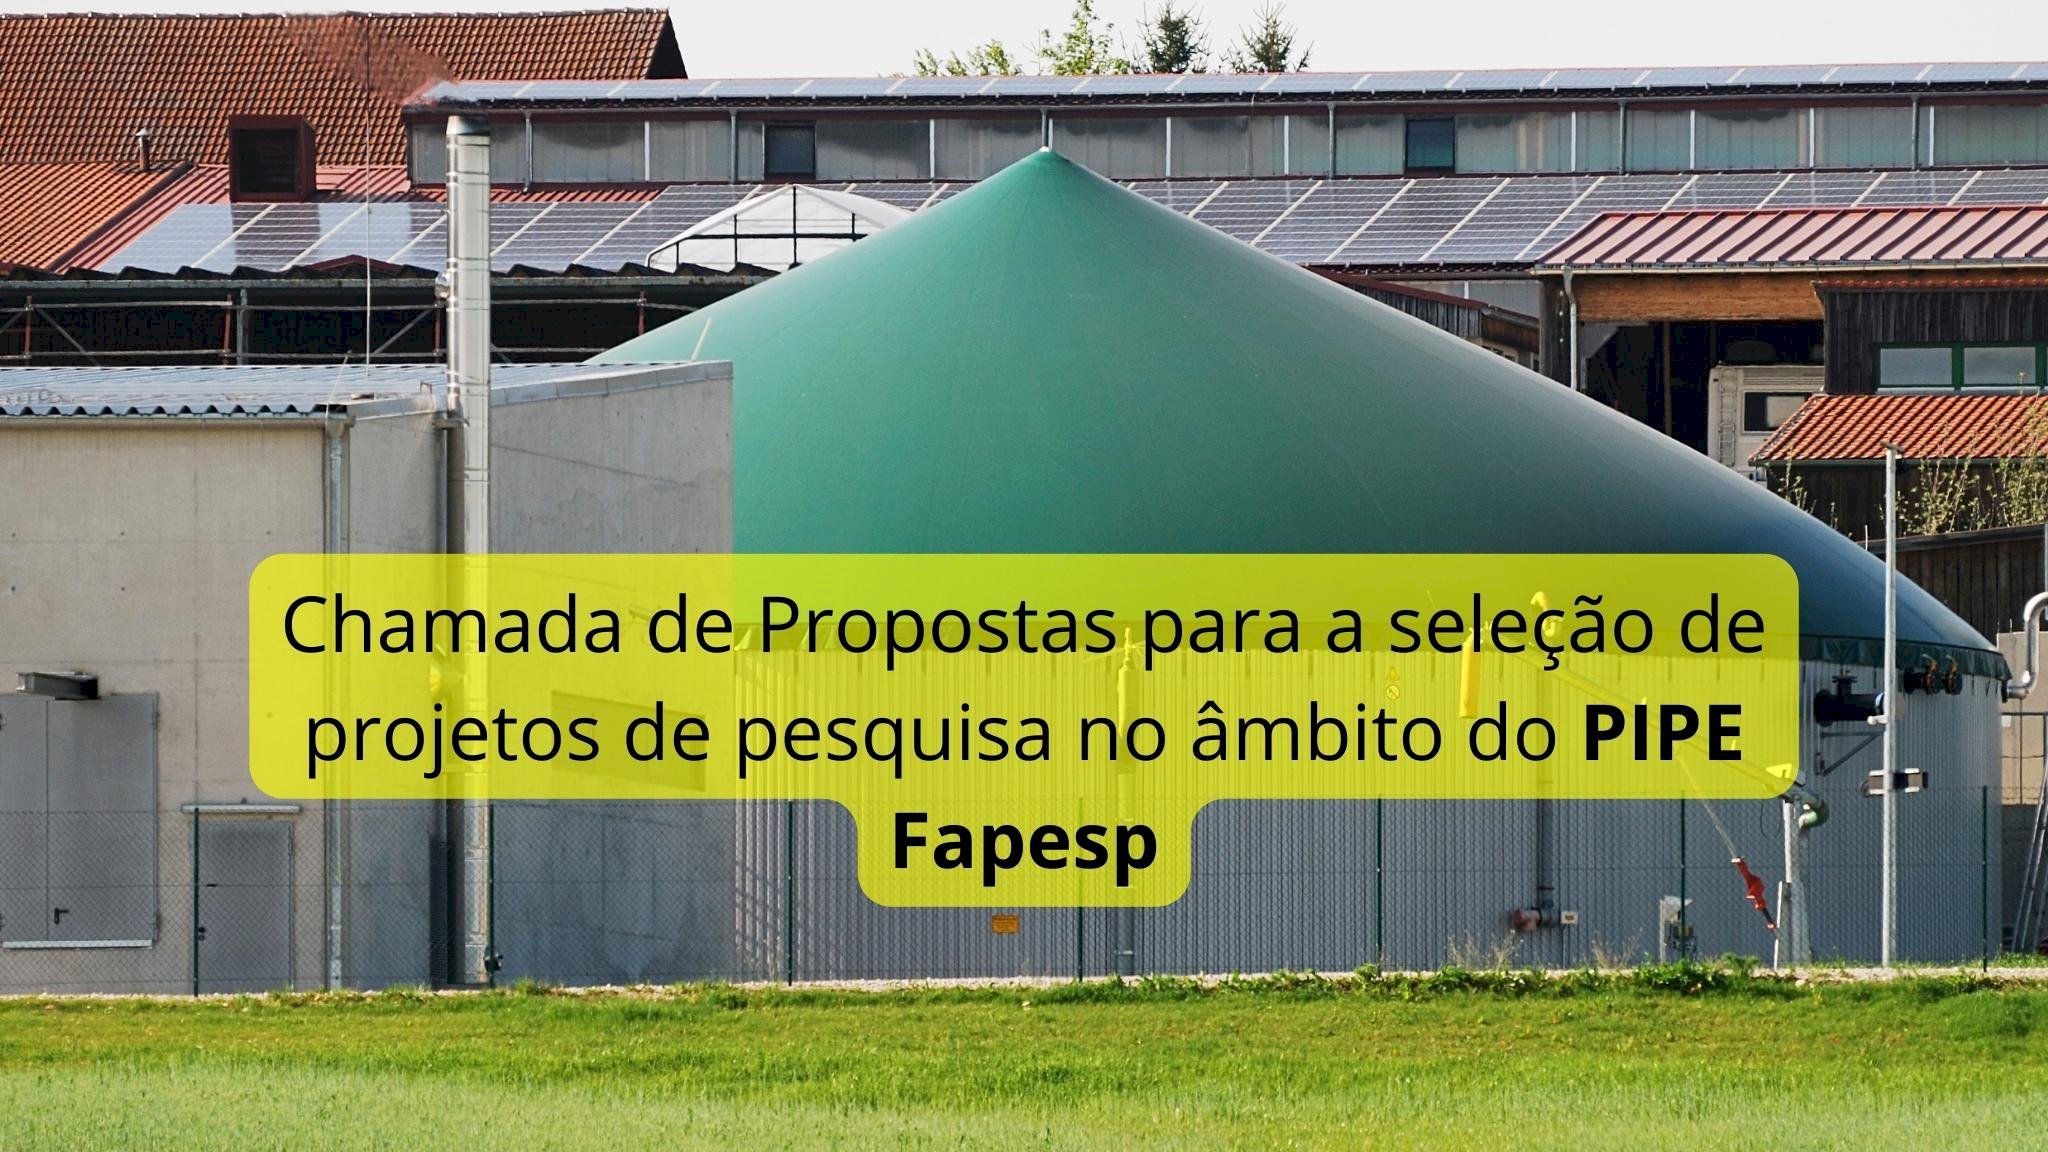 FAPESP anunciou a Chamada de Propostas para a seleção de projetos de pesquisa no âmbito do PIPE